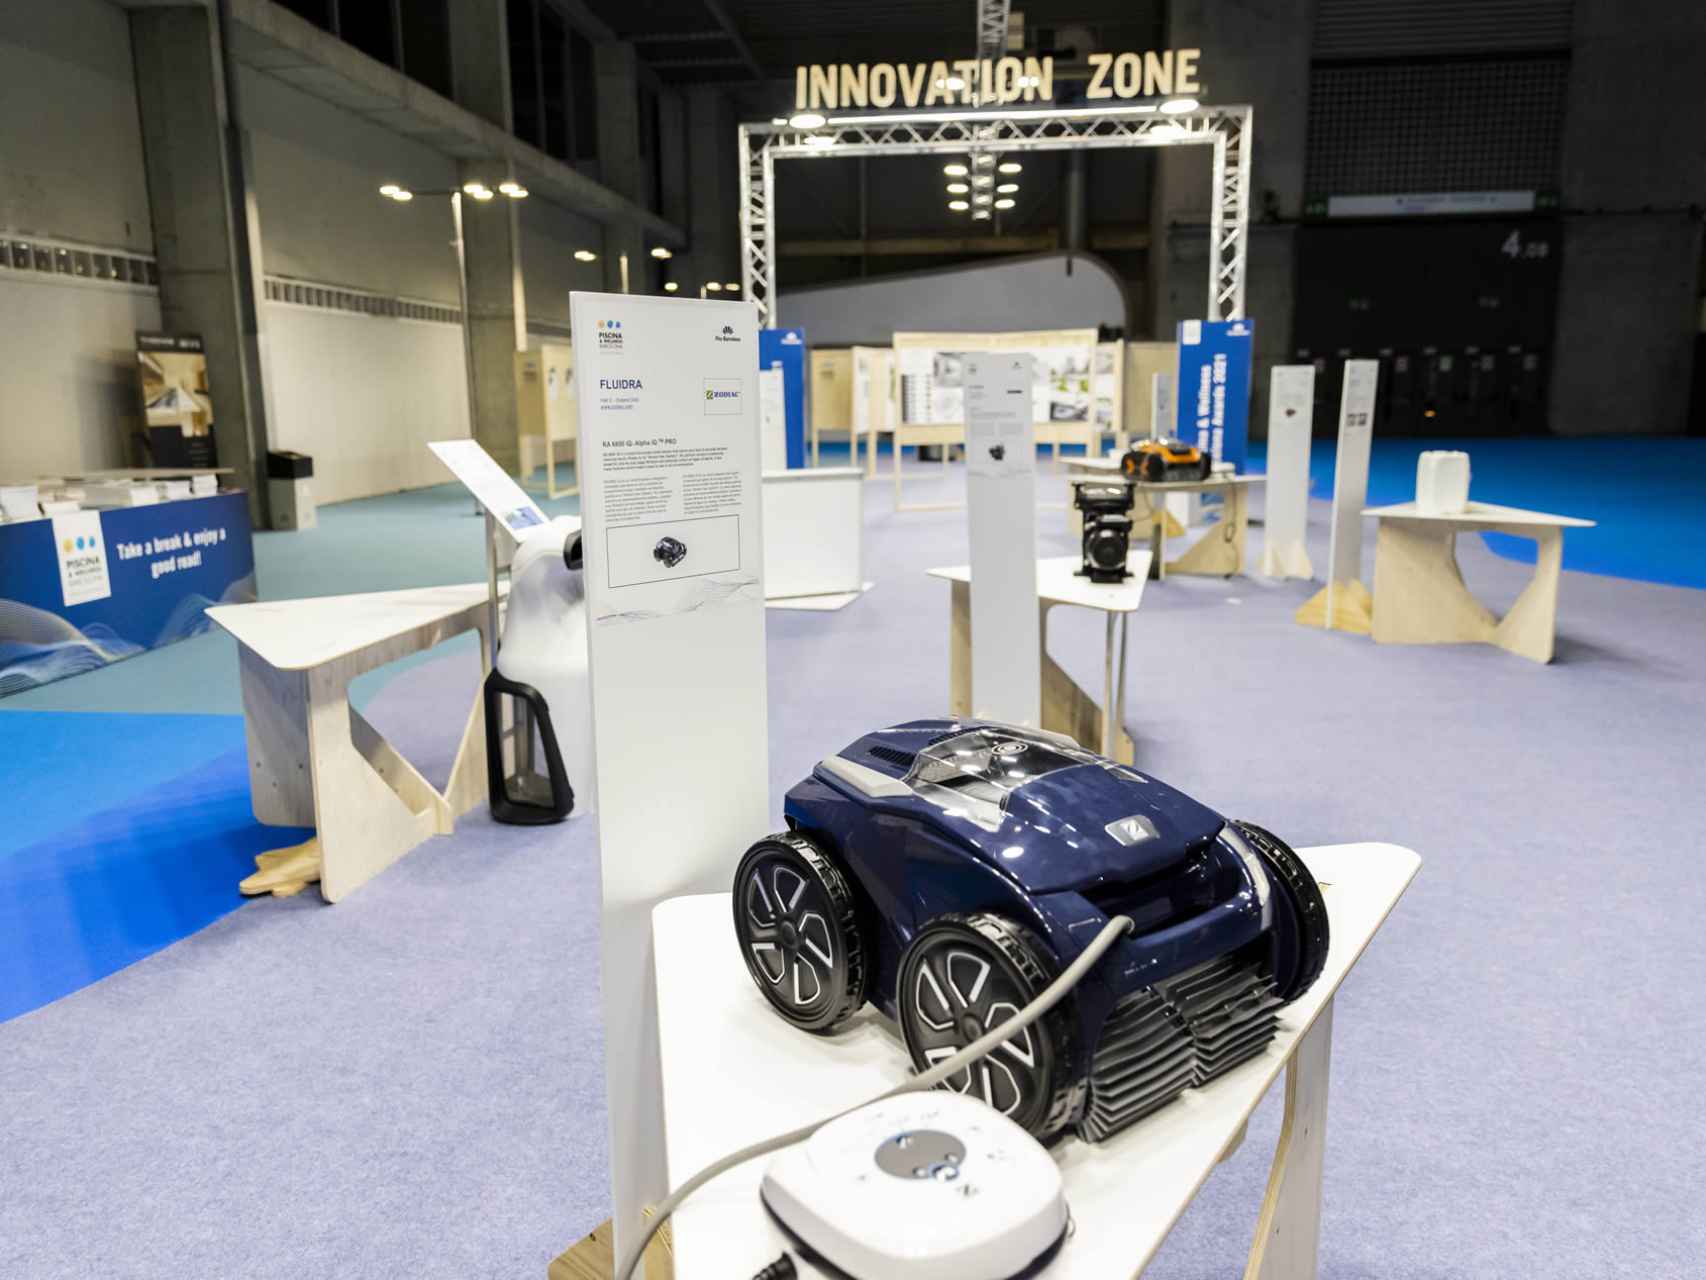 Robot limpiafondos en la Innovation Zone